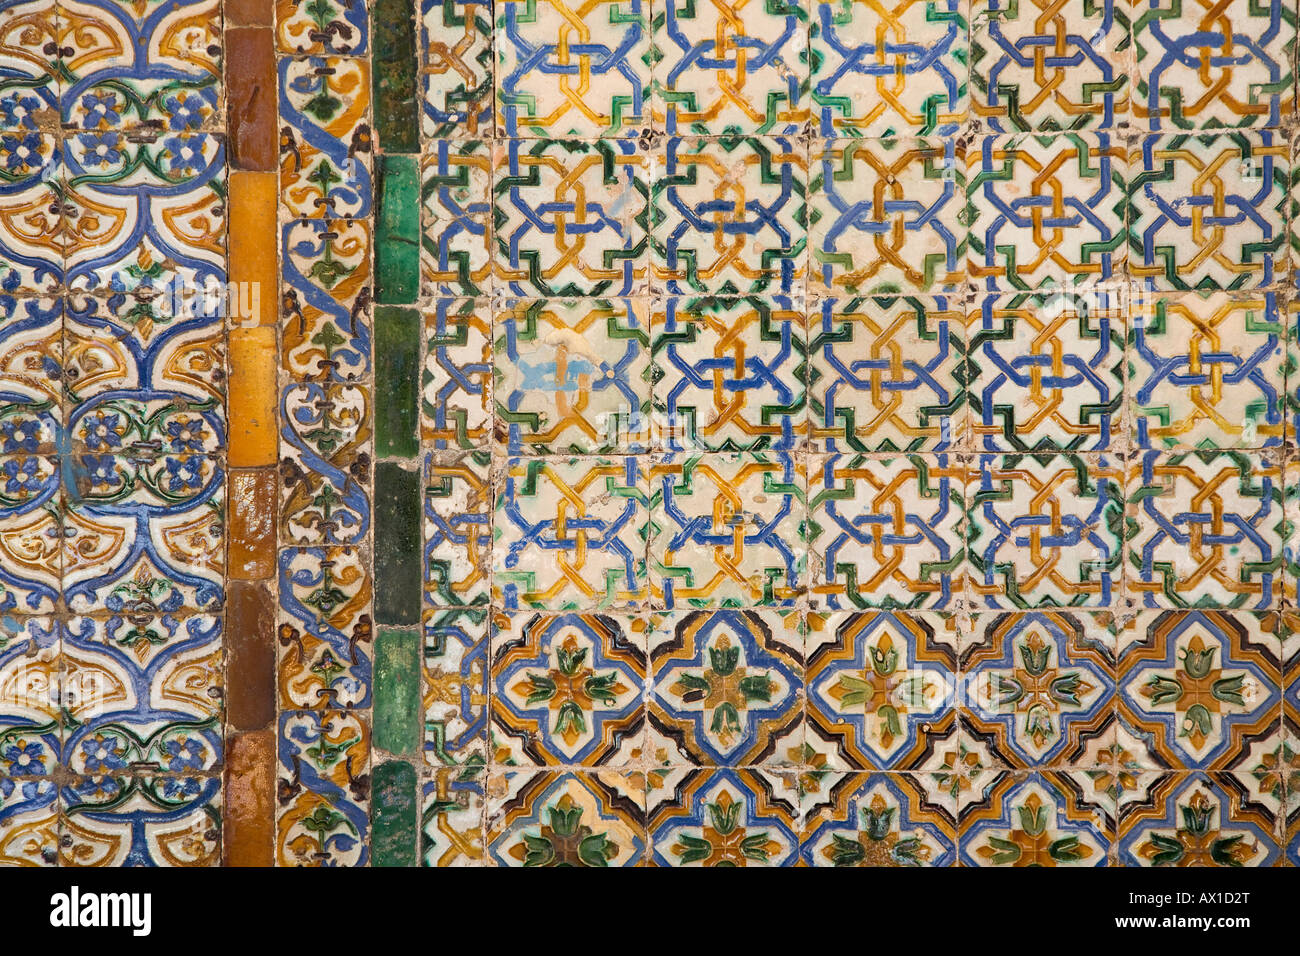 Casa de Pilatos, Casa Ducal de Medinaceli, courtyard, Patio, Palace House, tiles, Sevilla, Andalucia, Spain Stock Photo